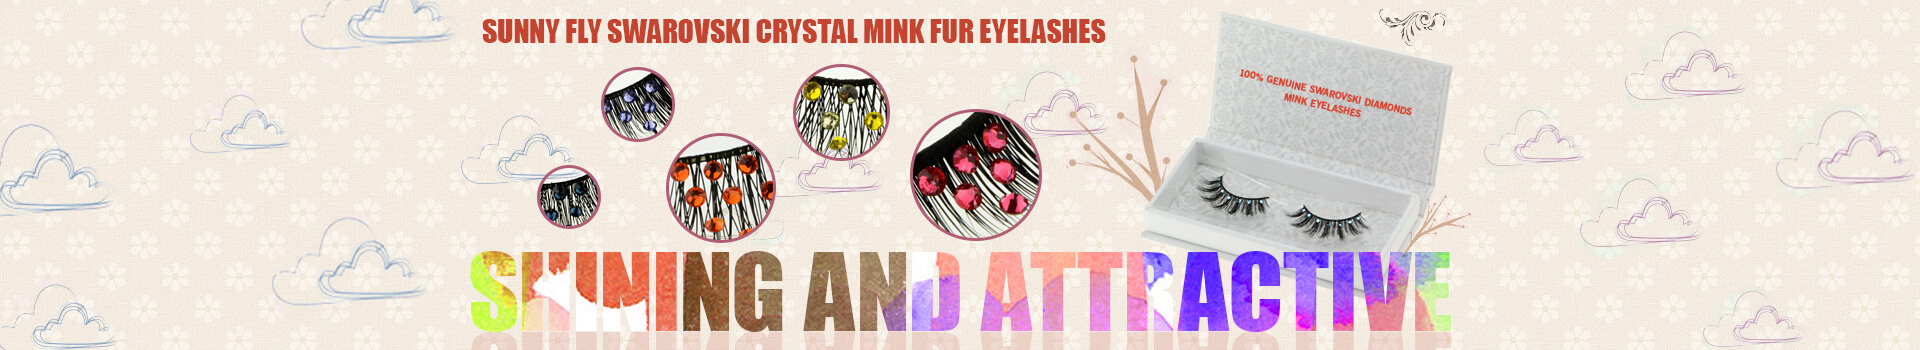 Swarovski Crystal Mink Fur Eyelashes MS21